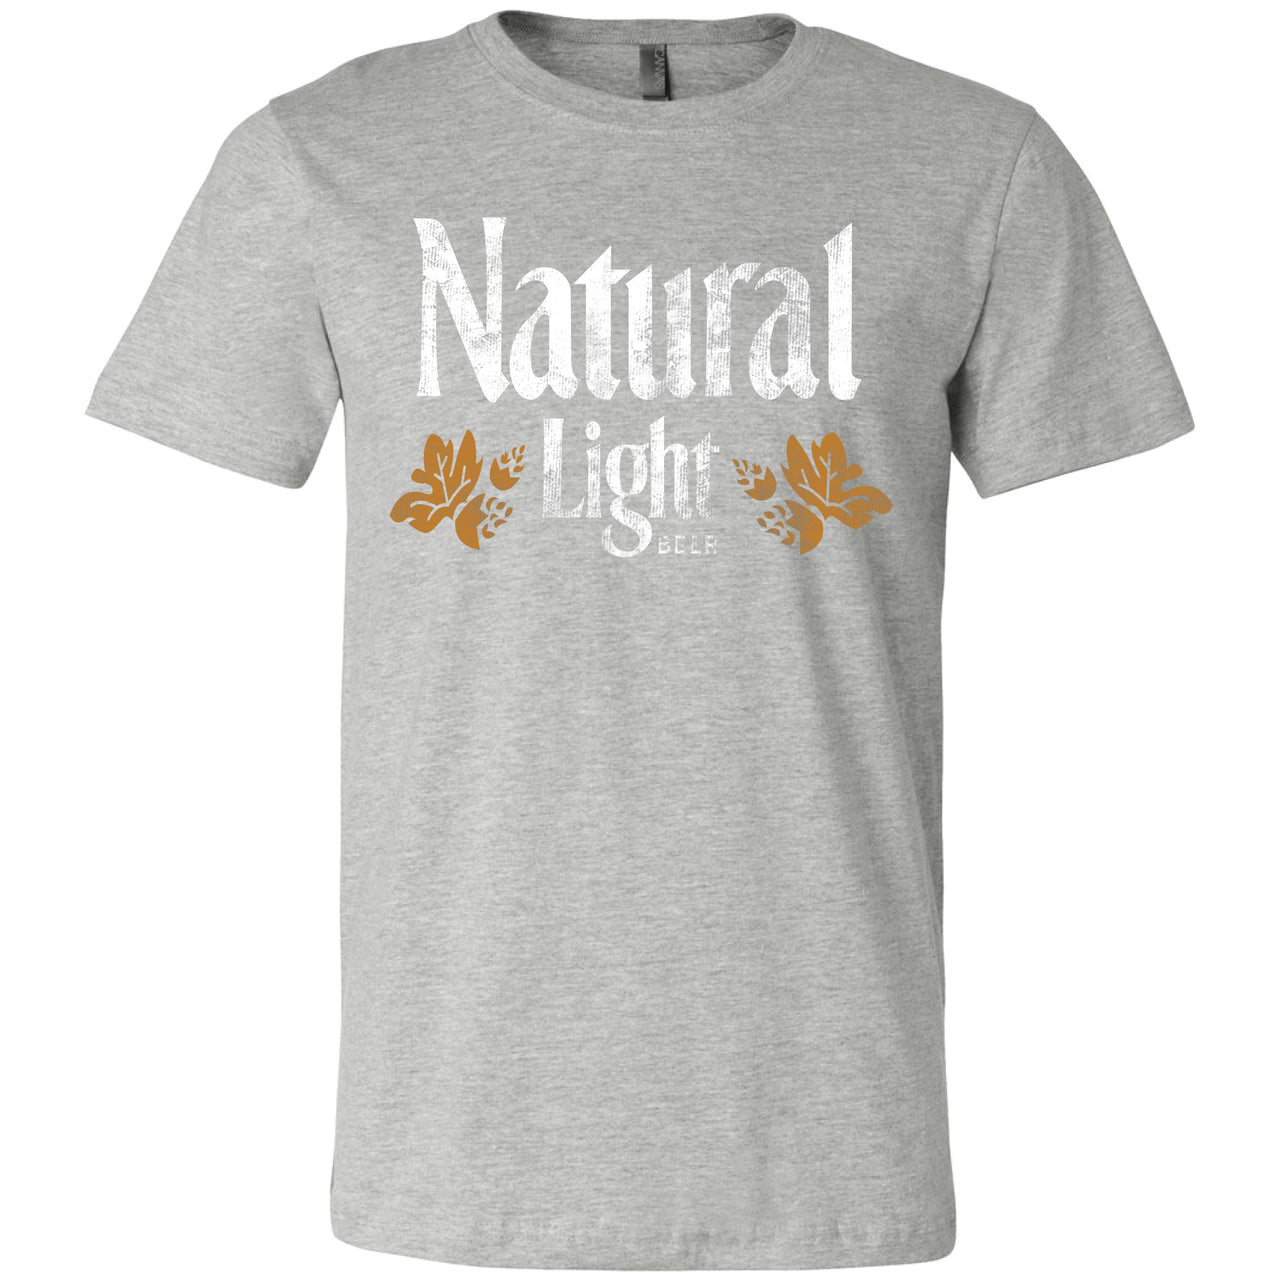 Natural Light Vintage Logo T-Shirt